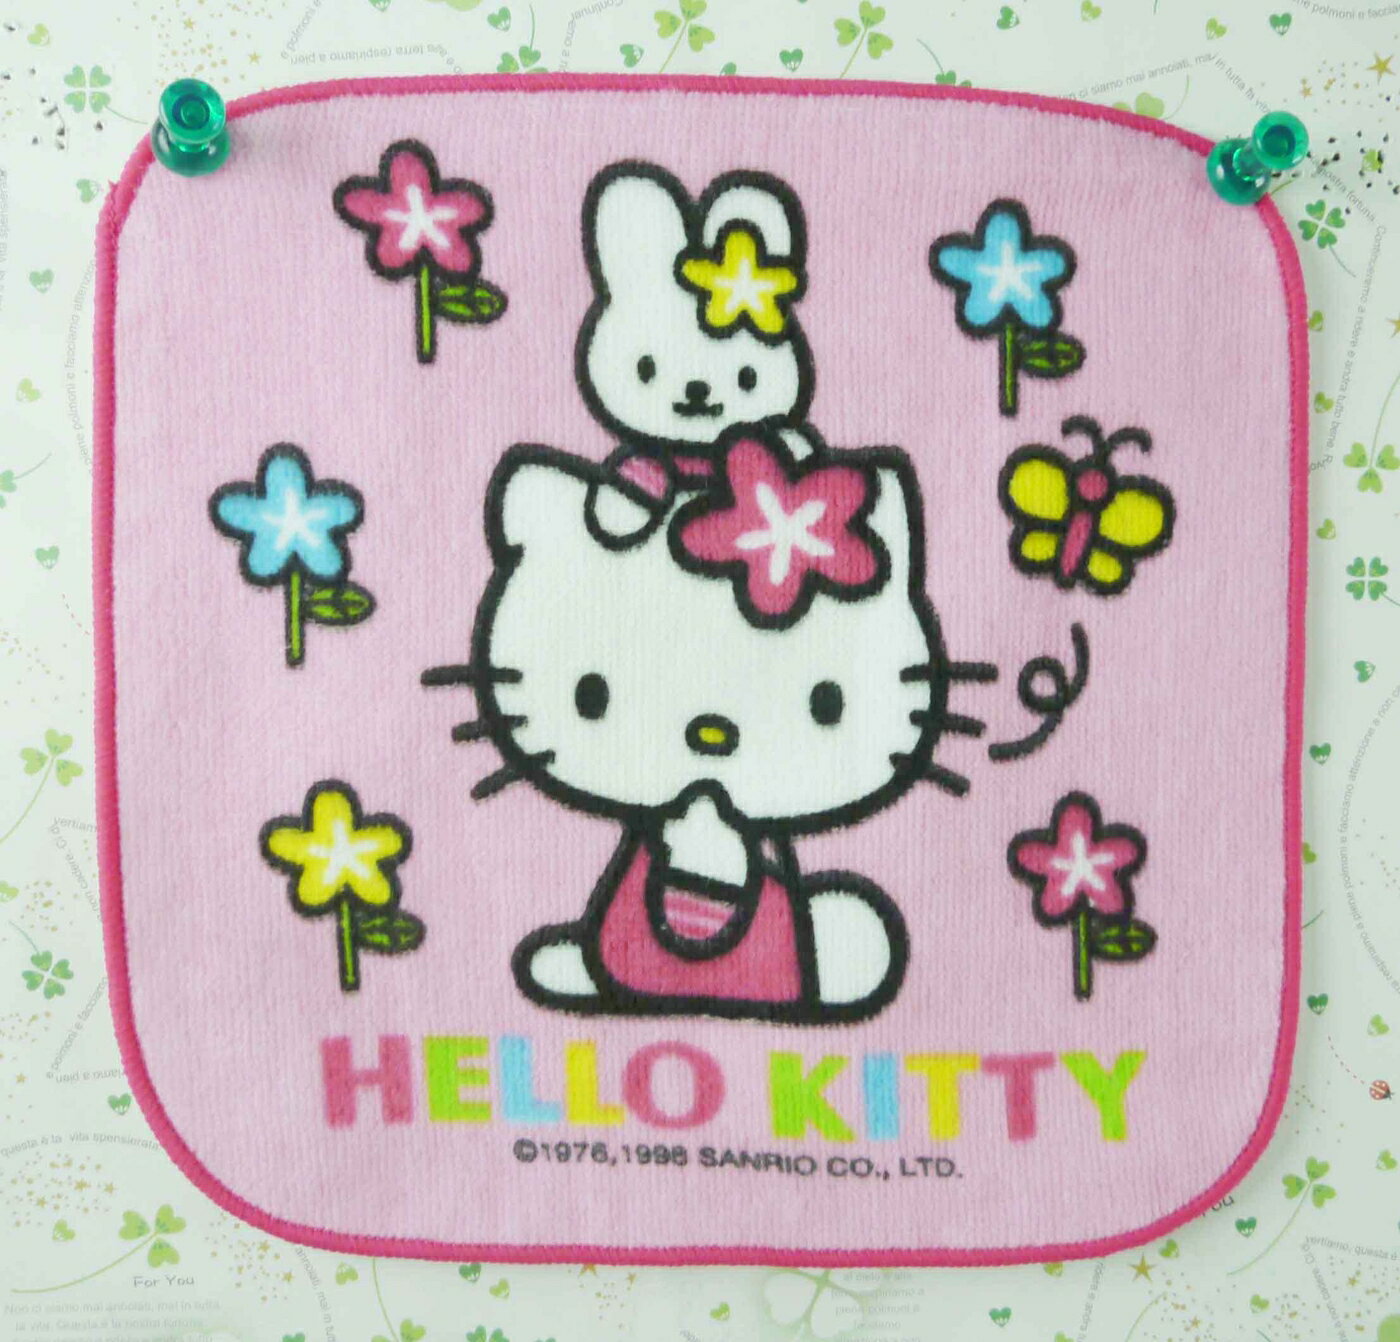 【震撼精品百貨】Hello Kitty 凱蒂貓 方巾/毛巾-粉紅色底+小花-側坐造型 震撼日式精品百貨